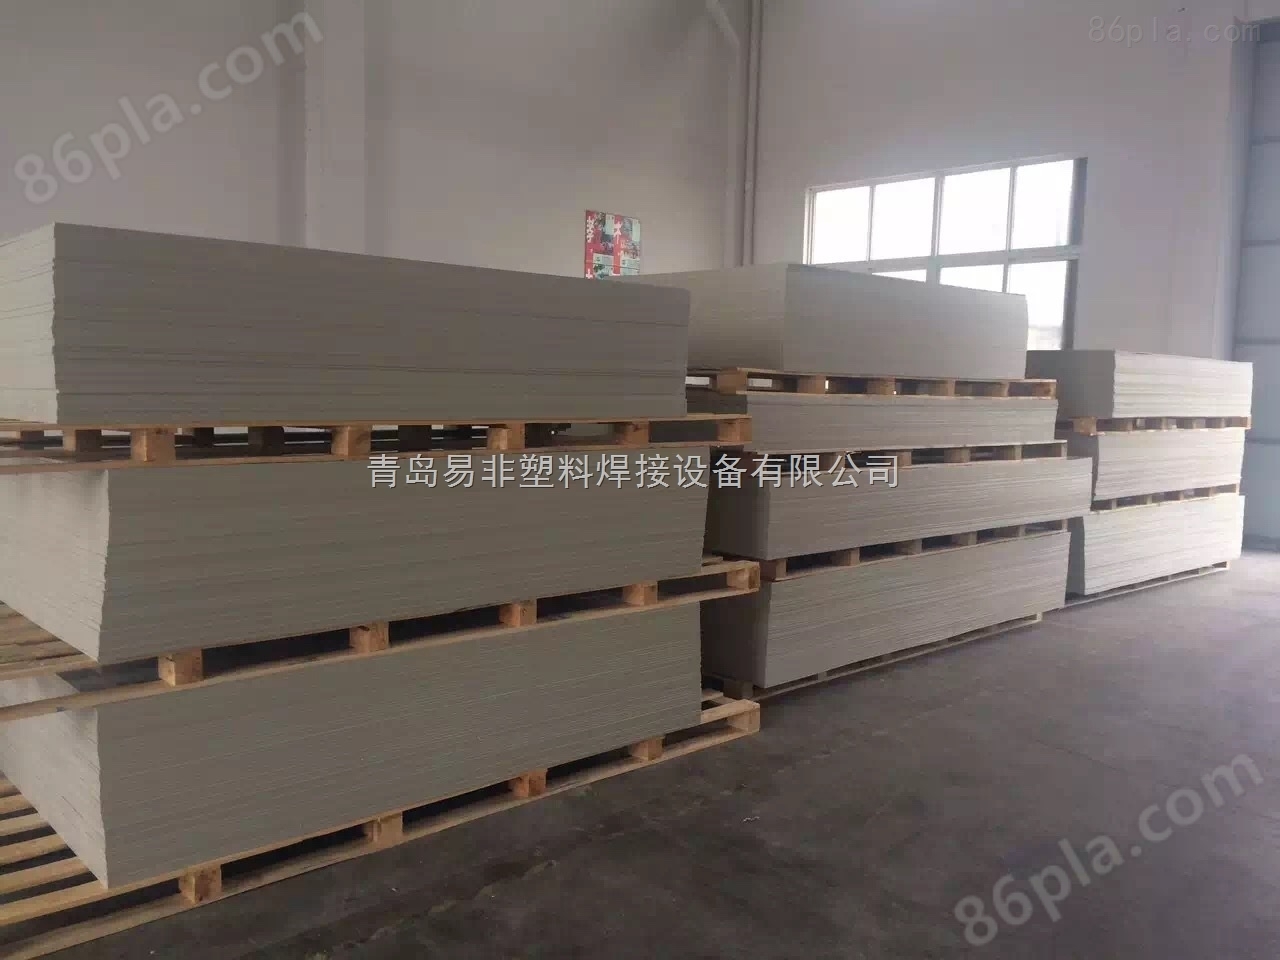 青岛胶州市专业生产塑料板材生产线